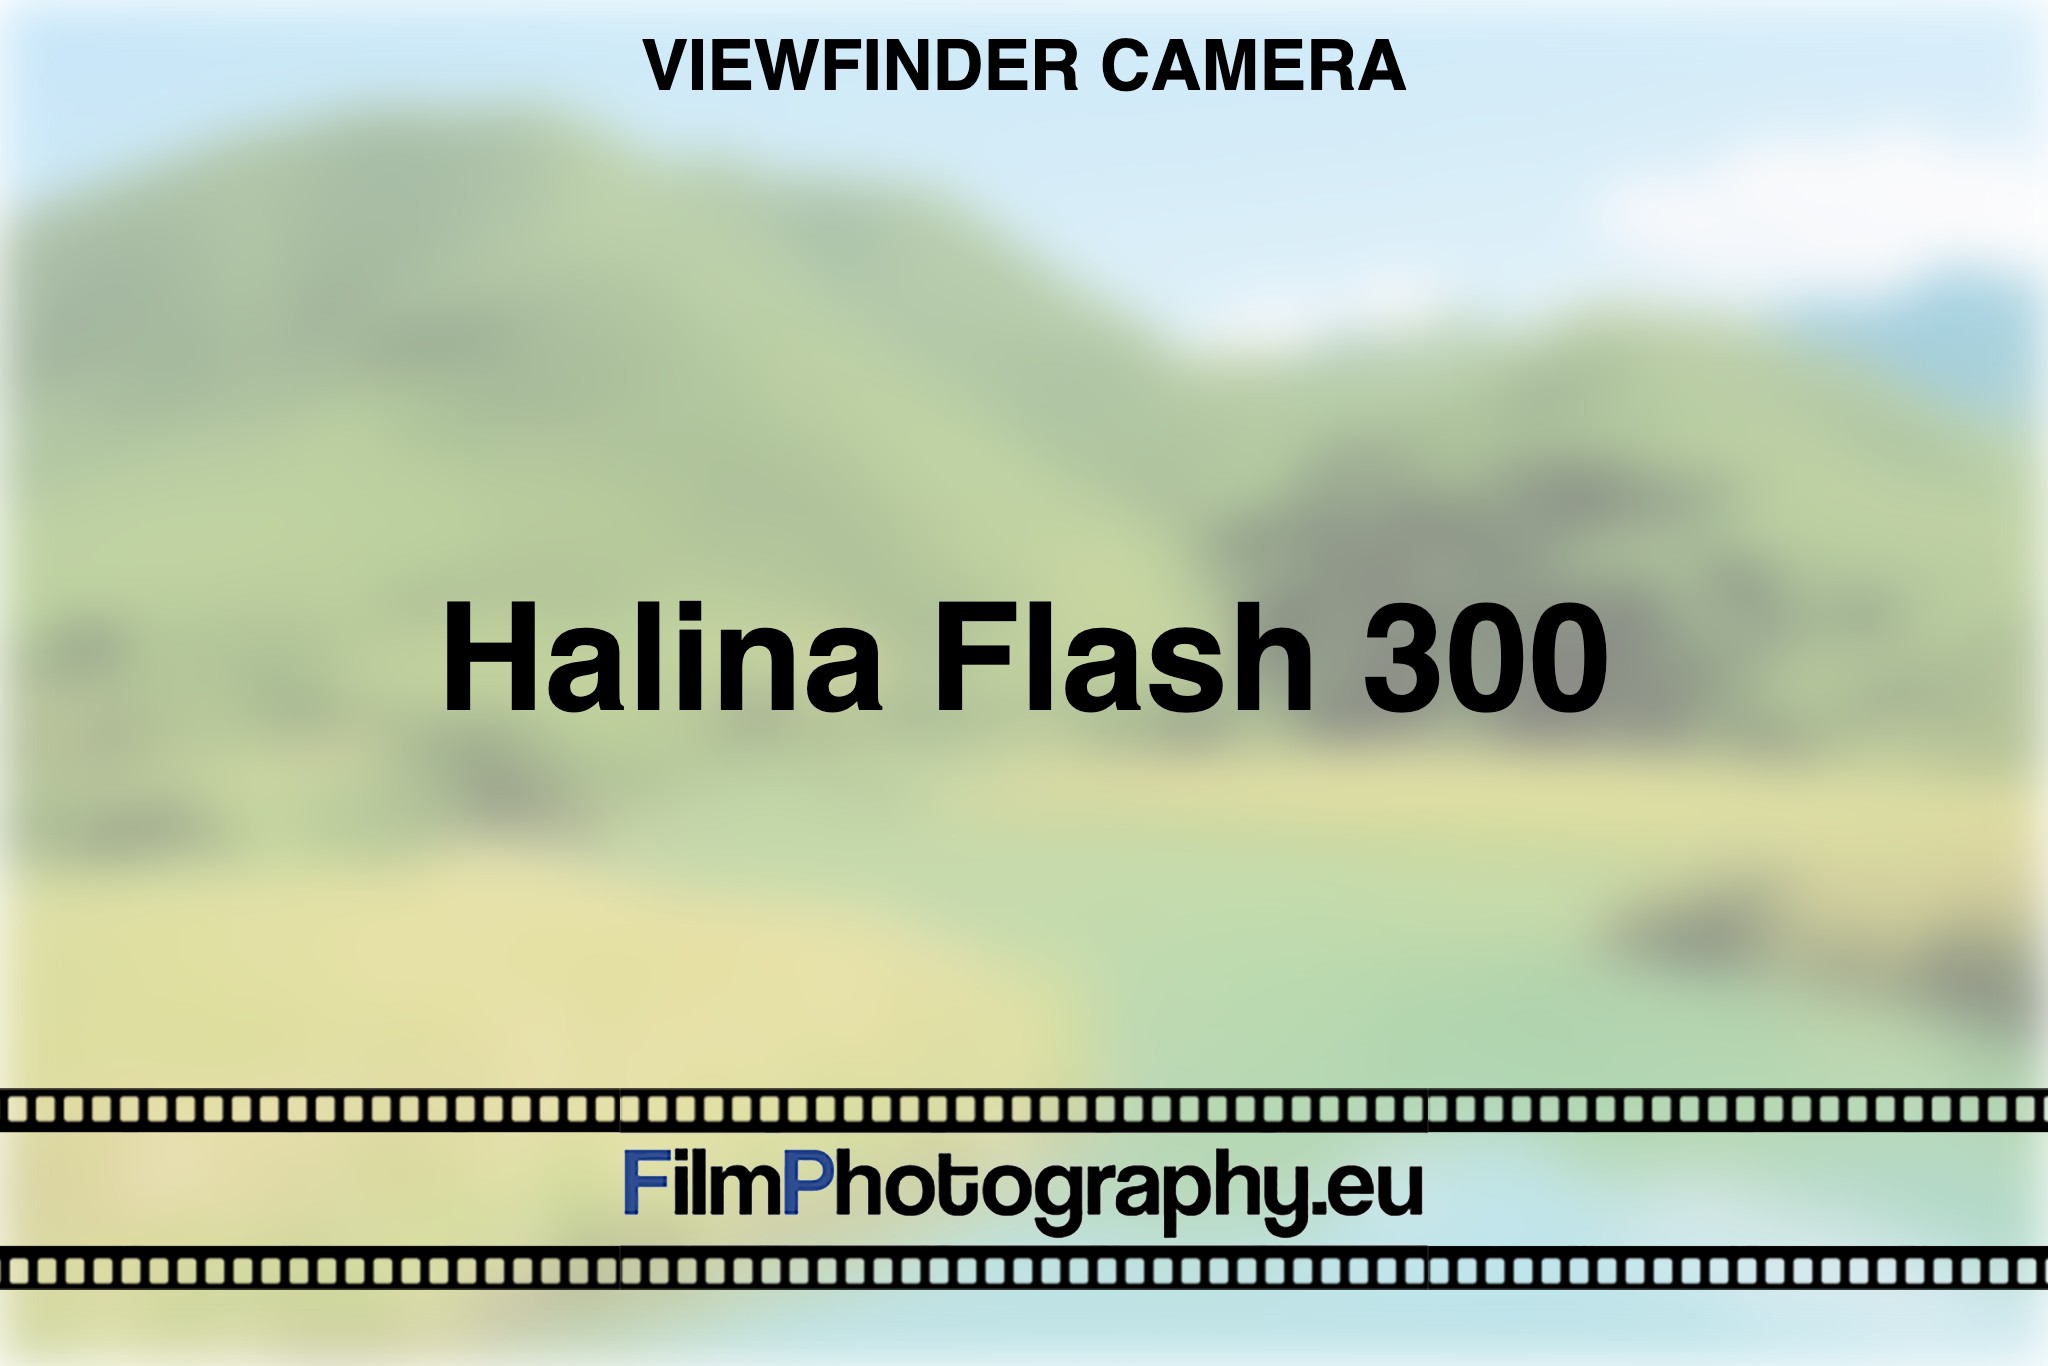 halina-flash-300-viewfinder-camera-bnv